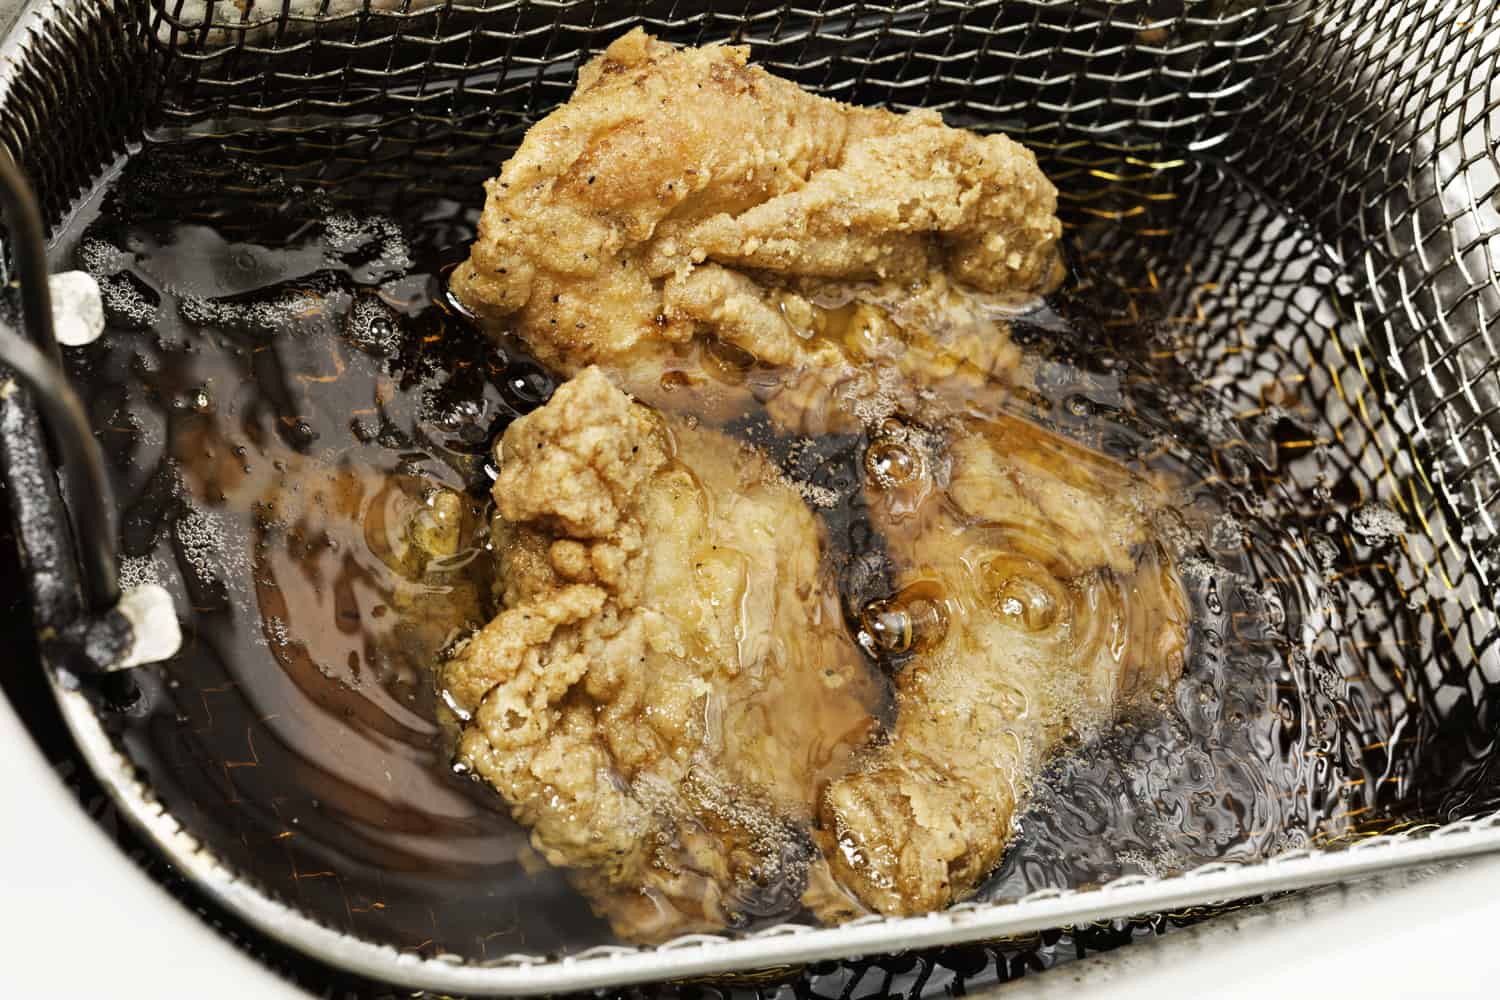 裹上面包屑的鸡肉块在热油里炸。它们被一个铁丝网篮子固定着。专注于油和上面的部分。